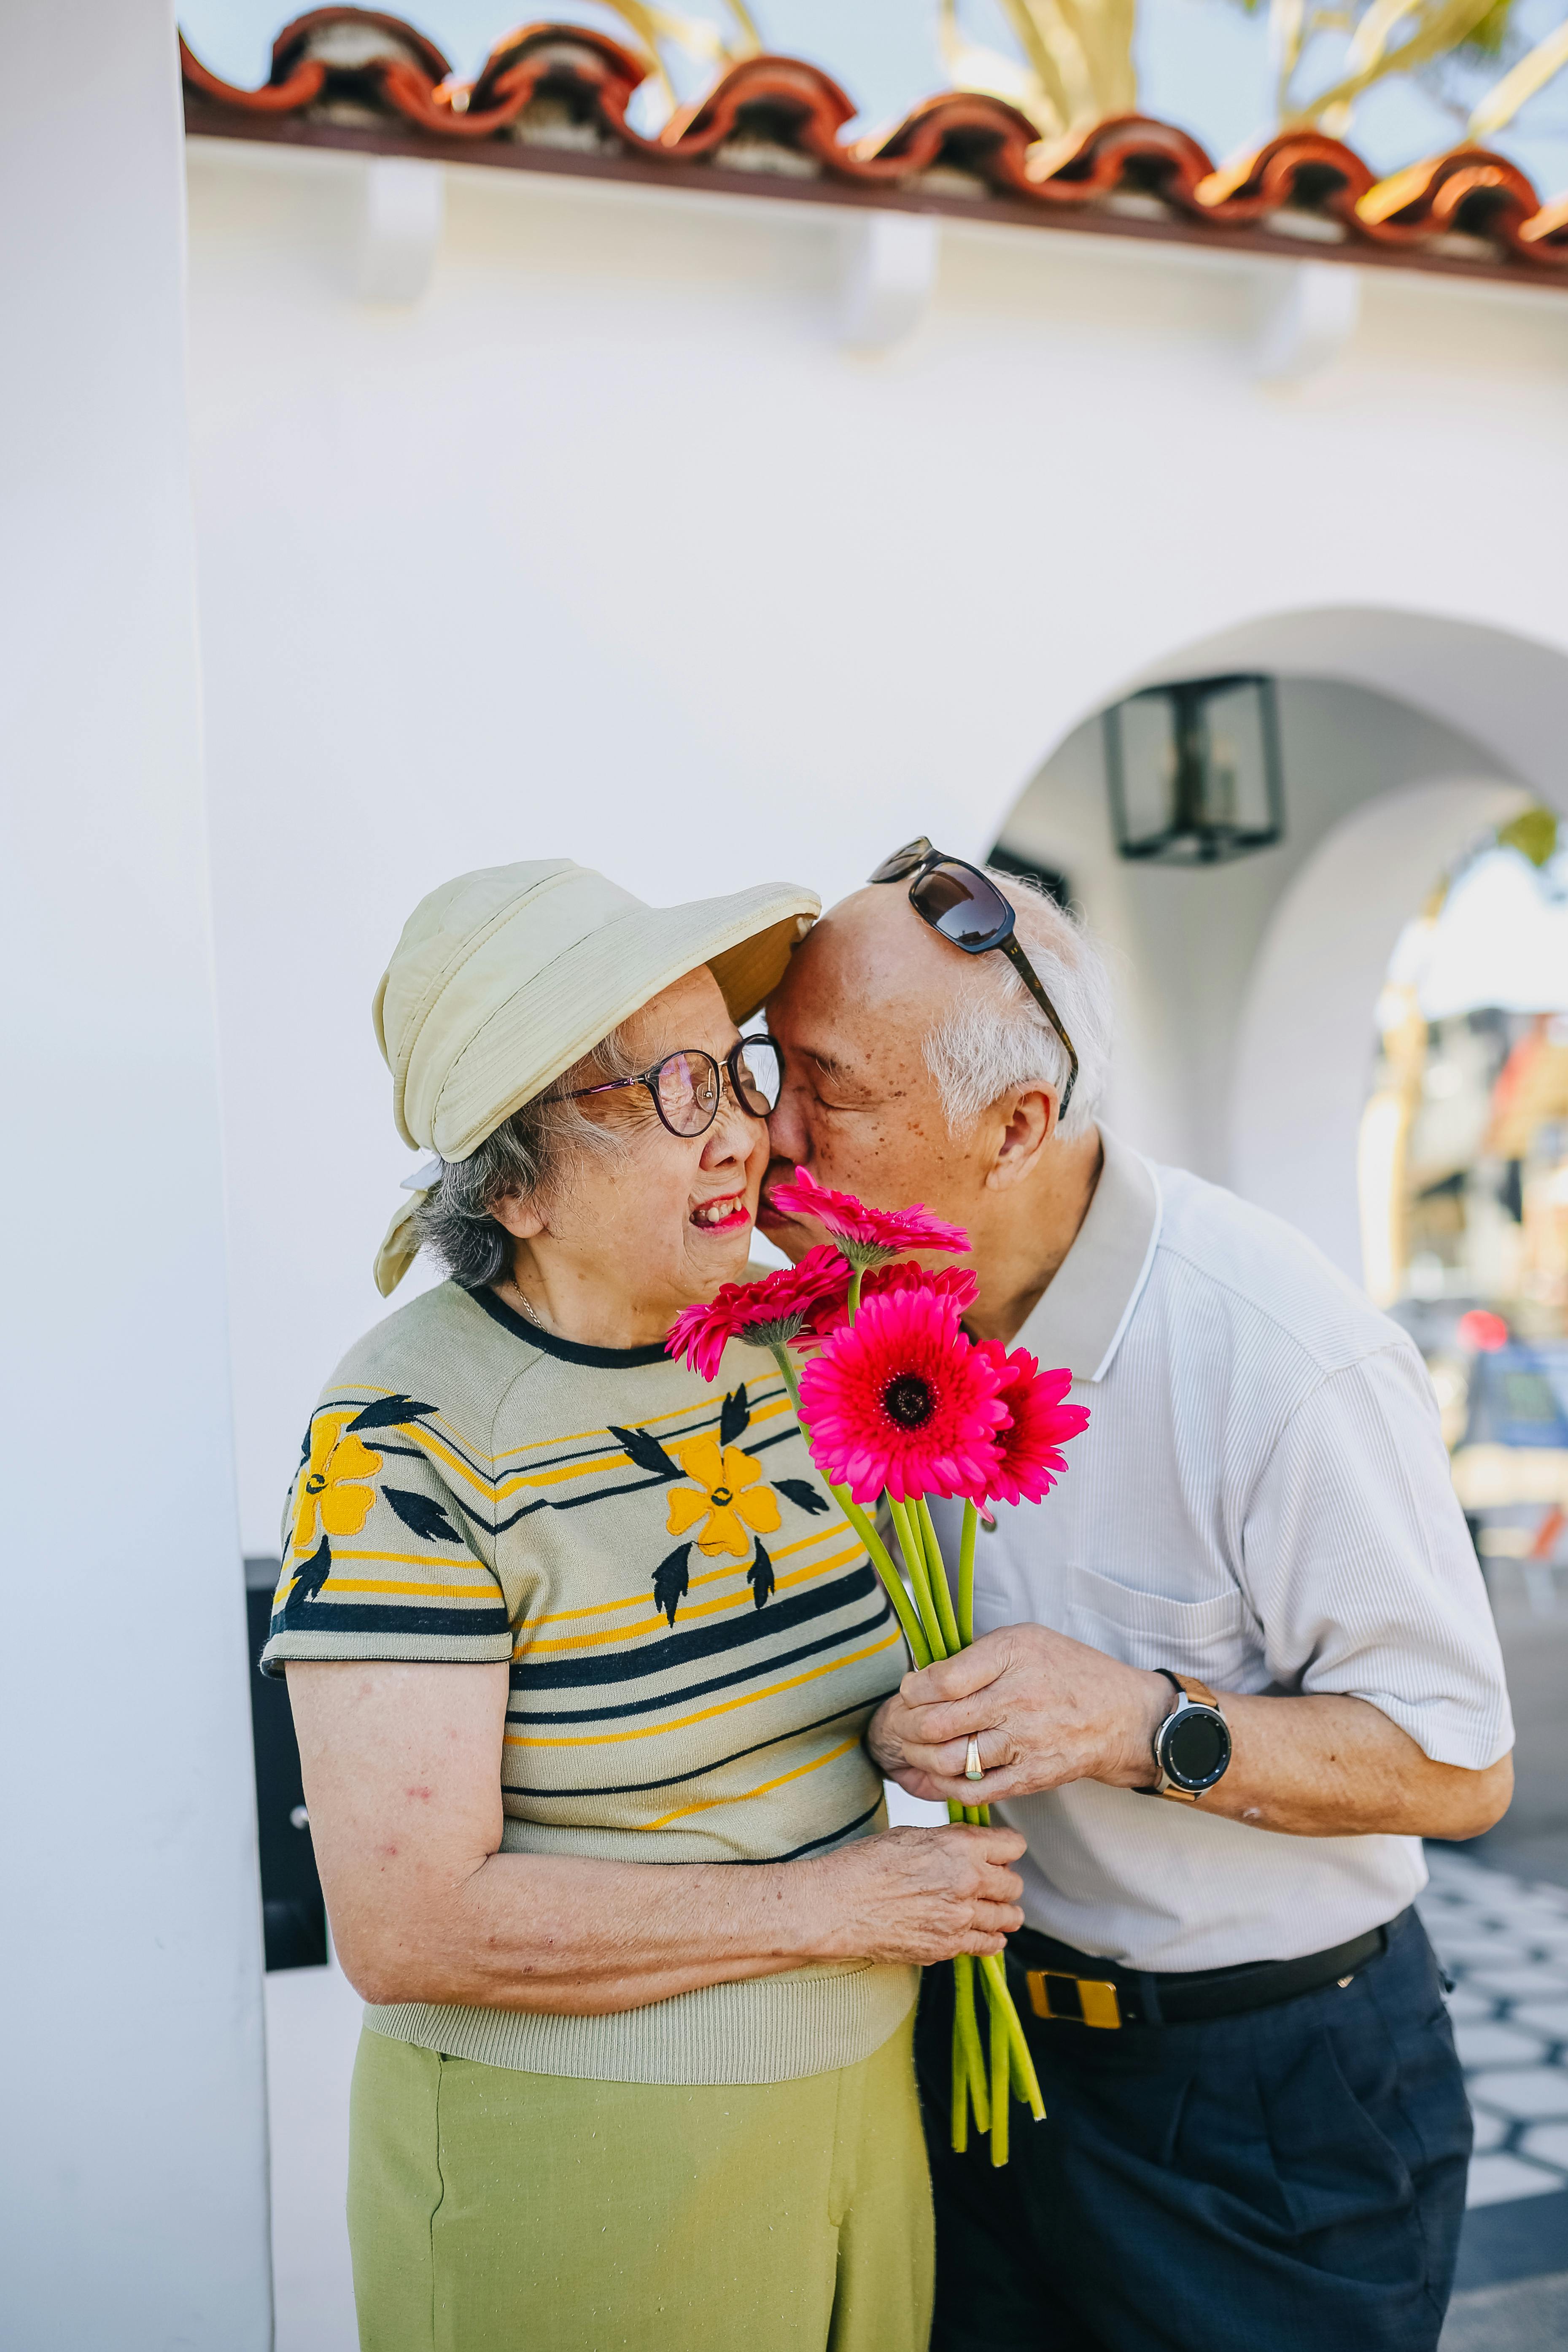 Una pareja en actitud romántica mientras la mujer recibe un ramo de flores | Foto: Pexels